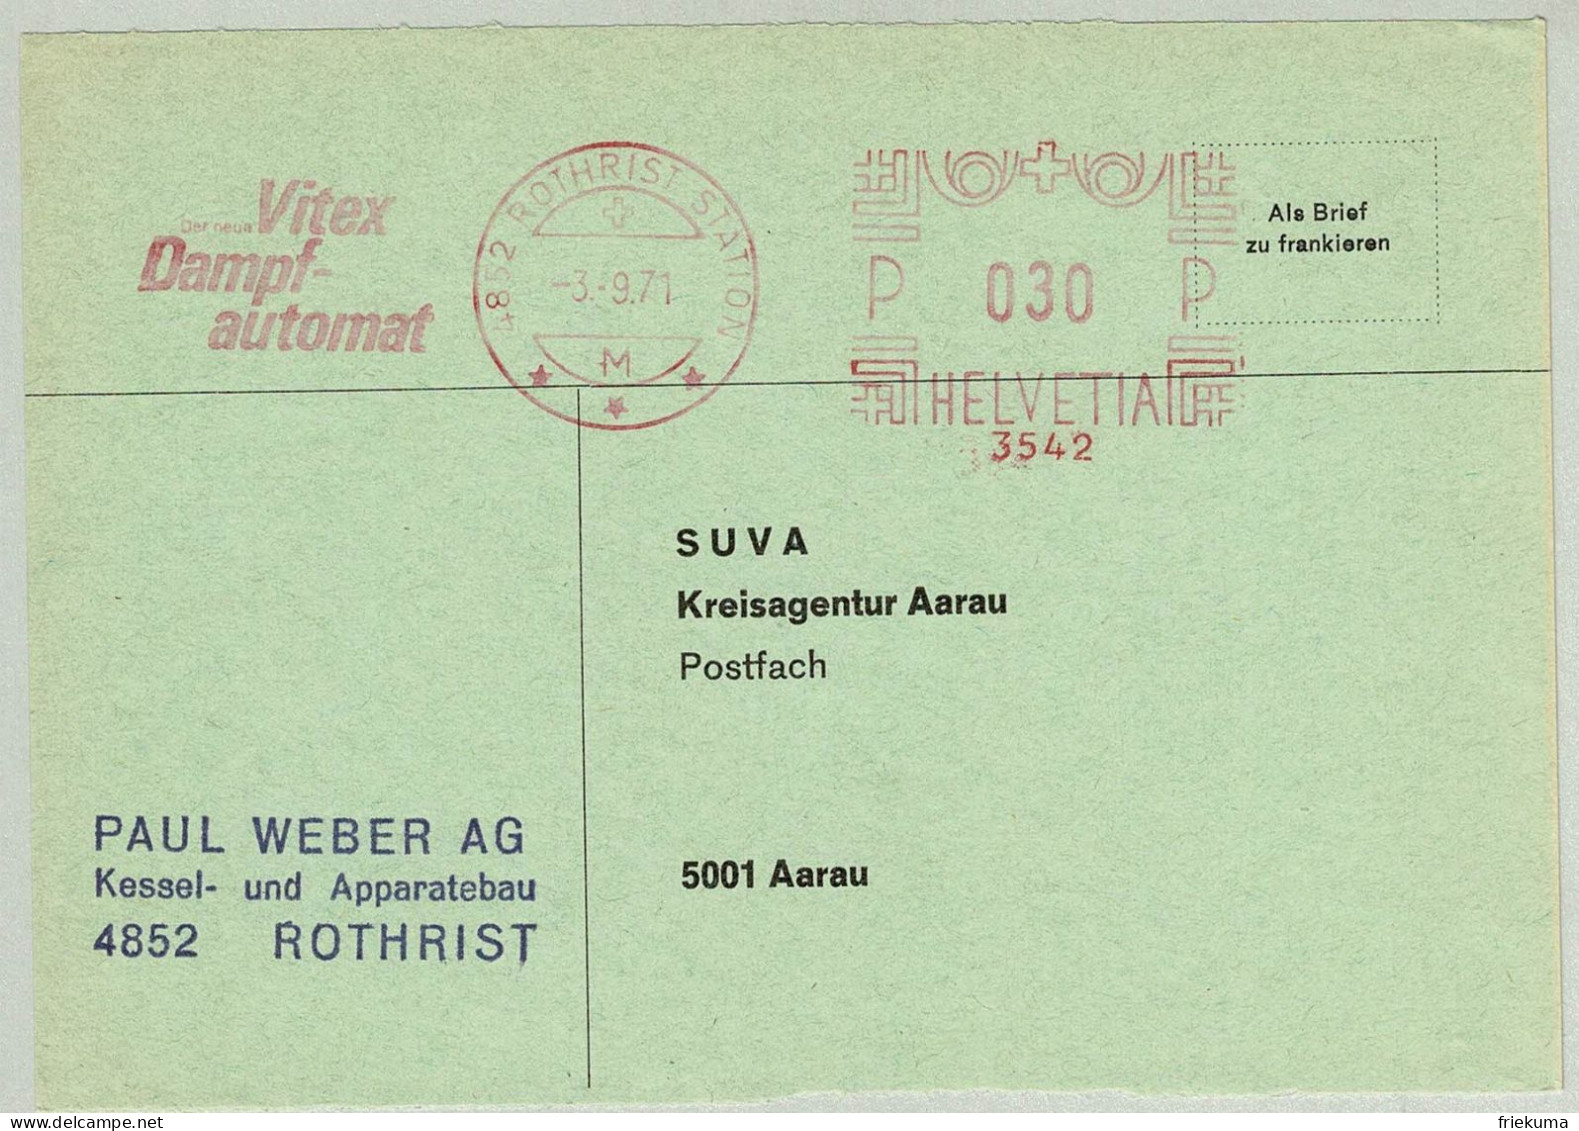 Schweiz / Helvetia 1971, Briefausschnitt Freistempel / EMA / Meterstamp Weber AG Rothrist - Aarau, Dampfautomat - Eau